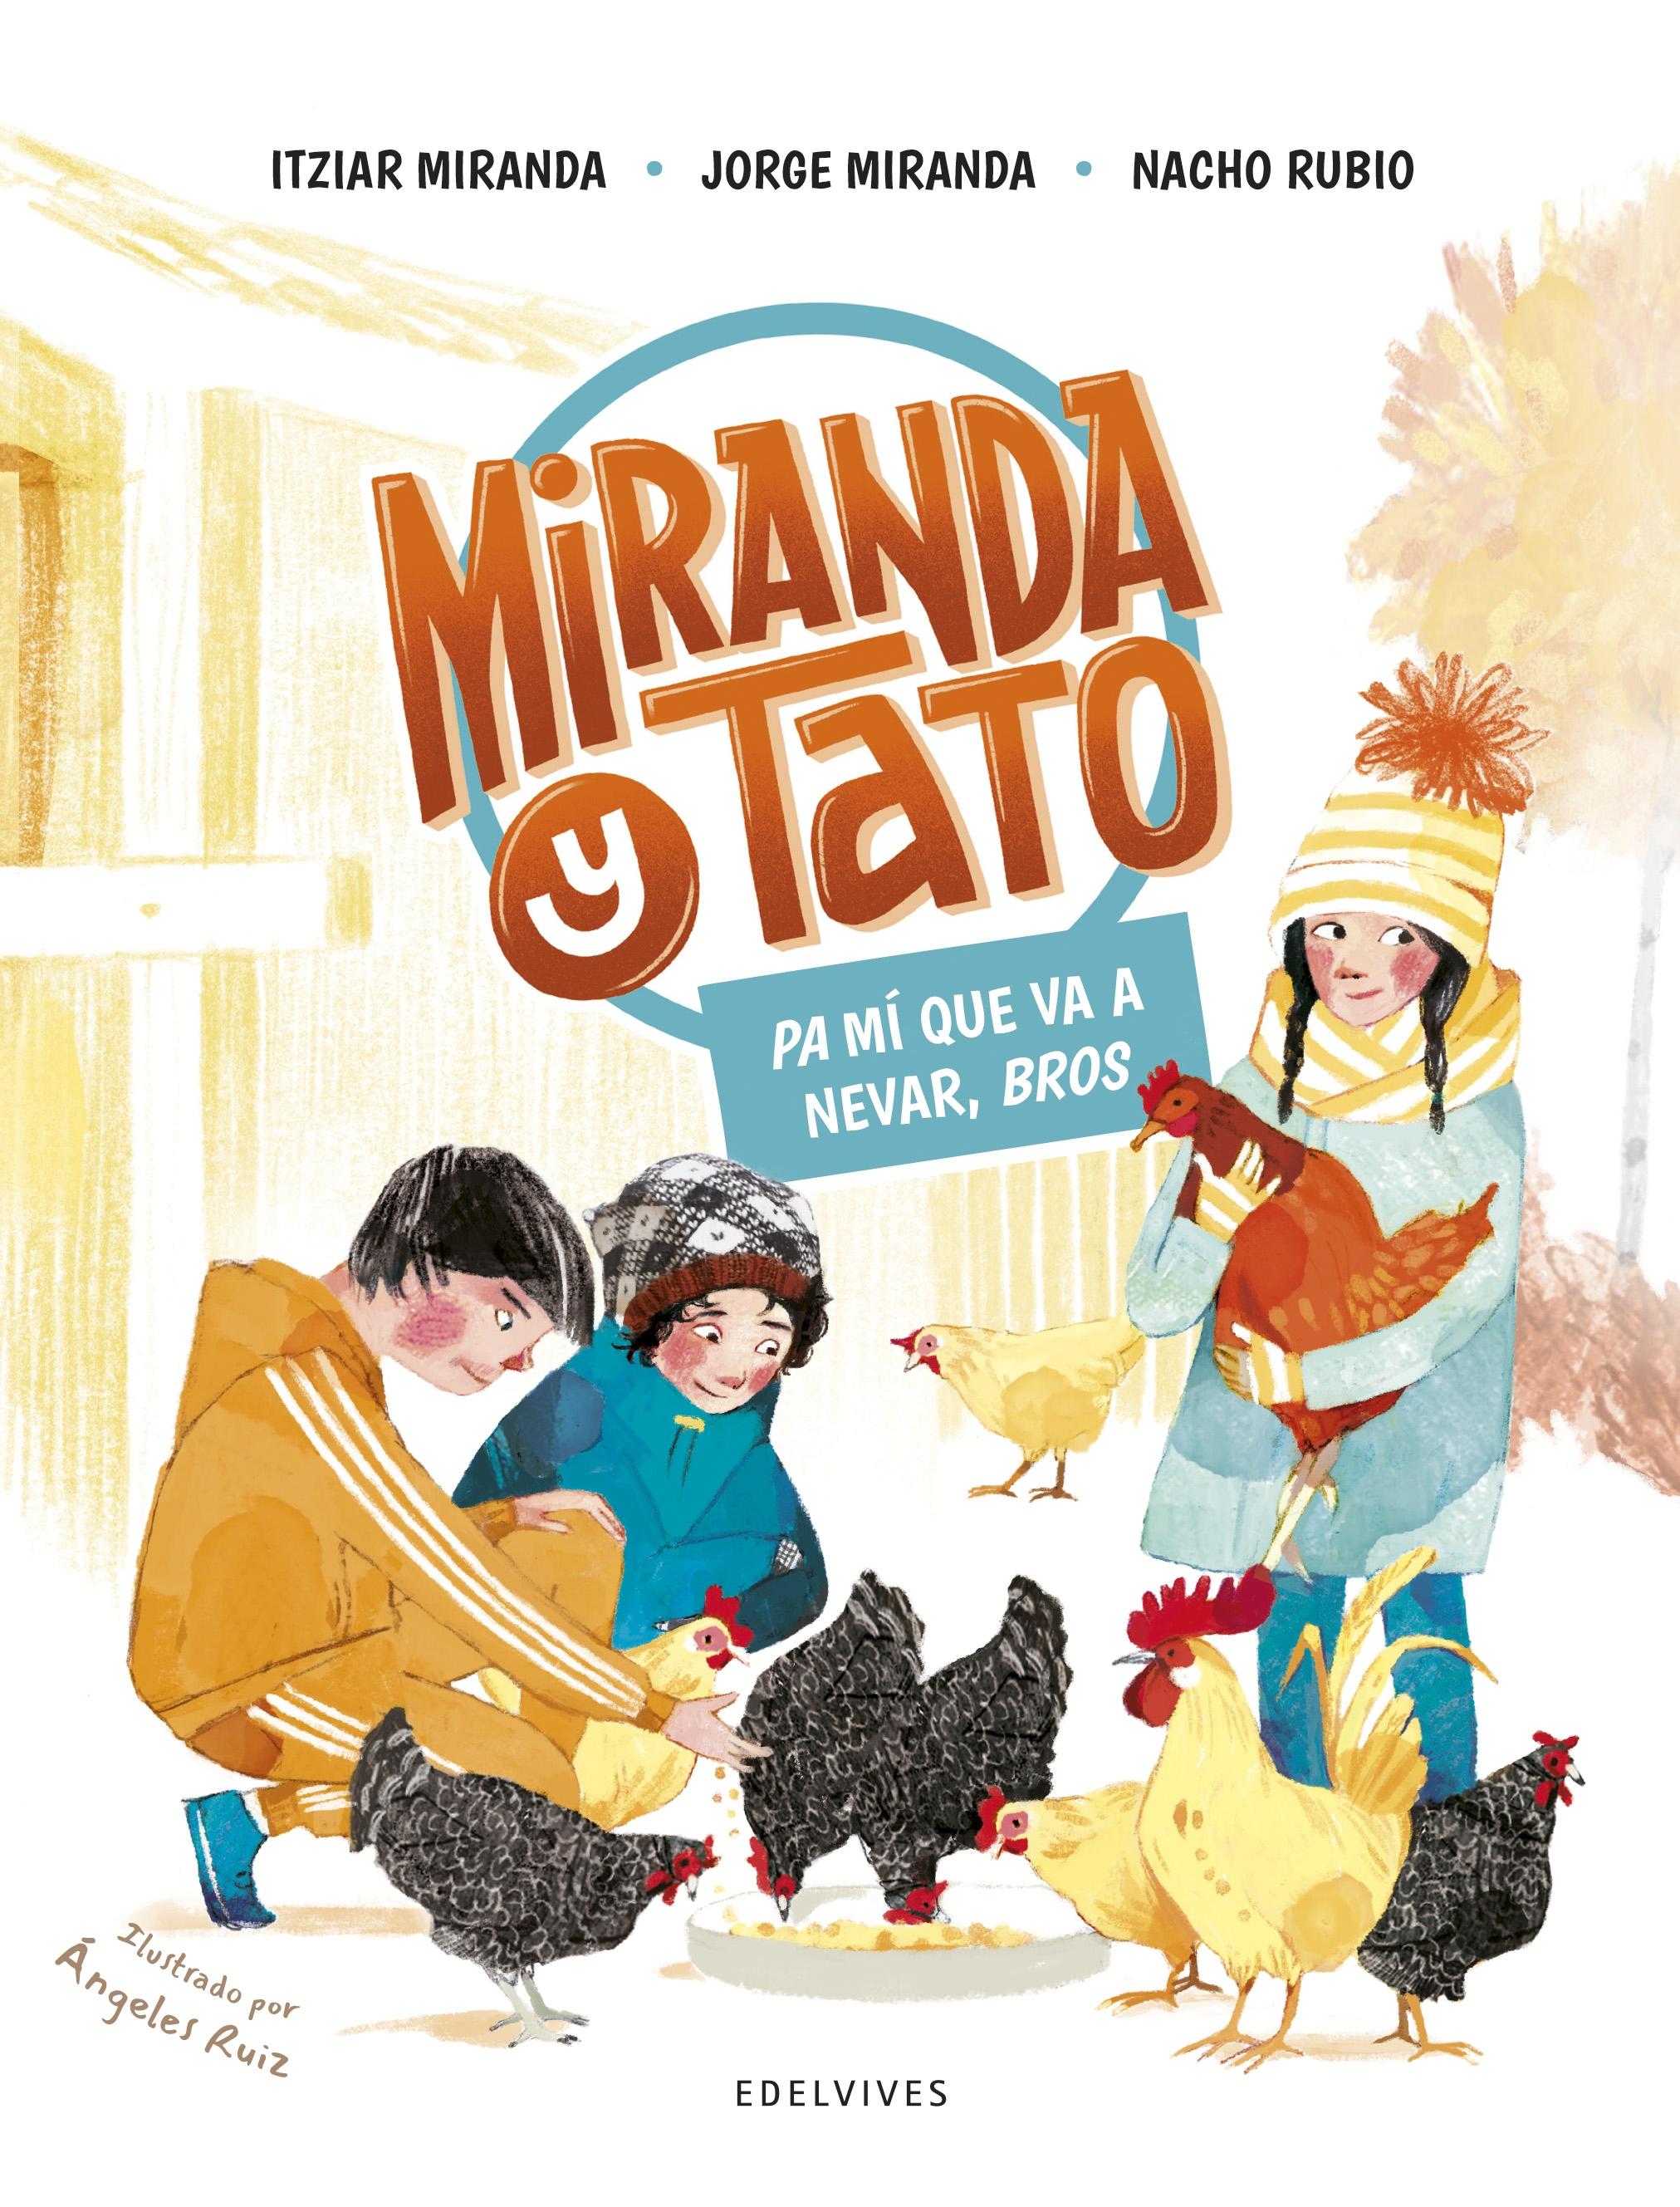 Miranda y Tato 3 "¡Pa mí que va a nevar, bros! "